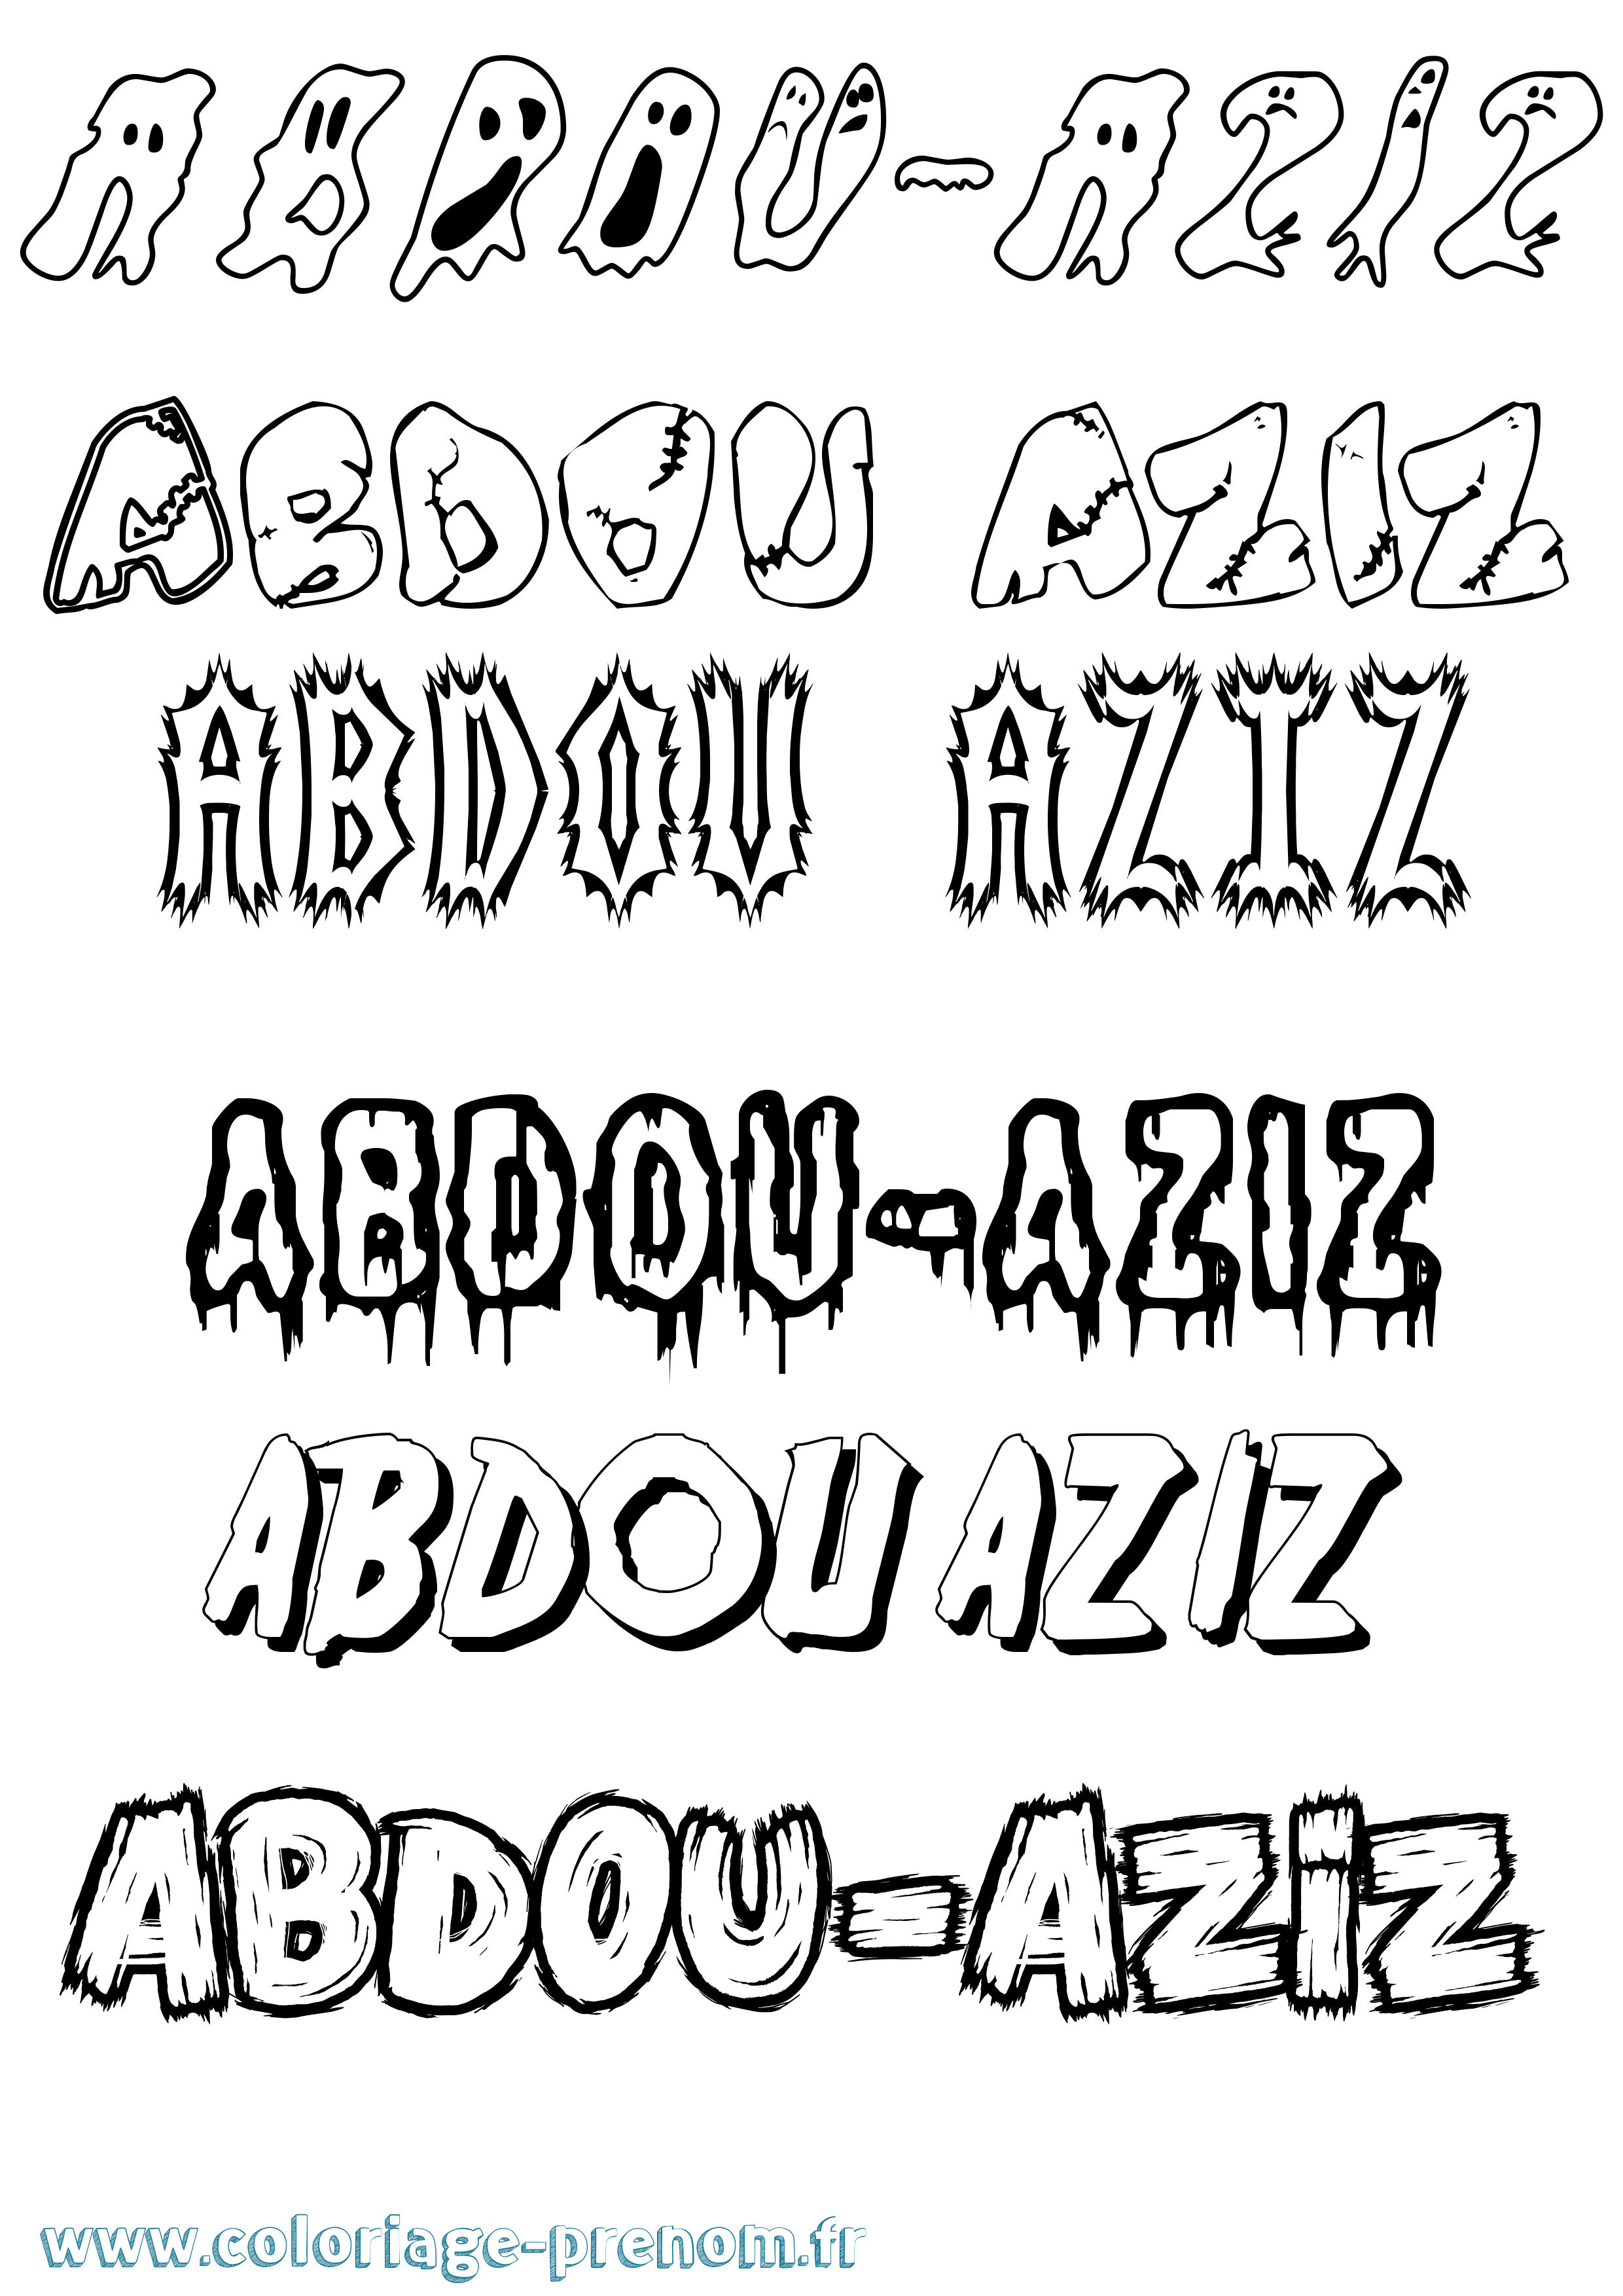 Coloriage prénom Abdou-Aziz Frisson